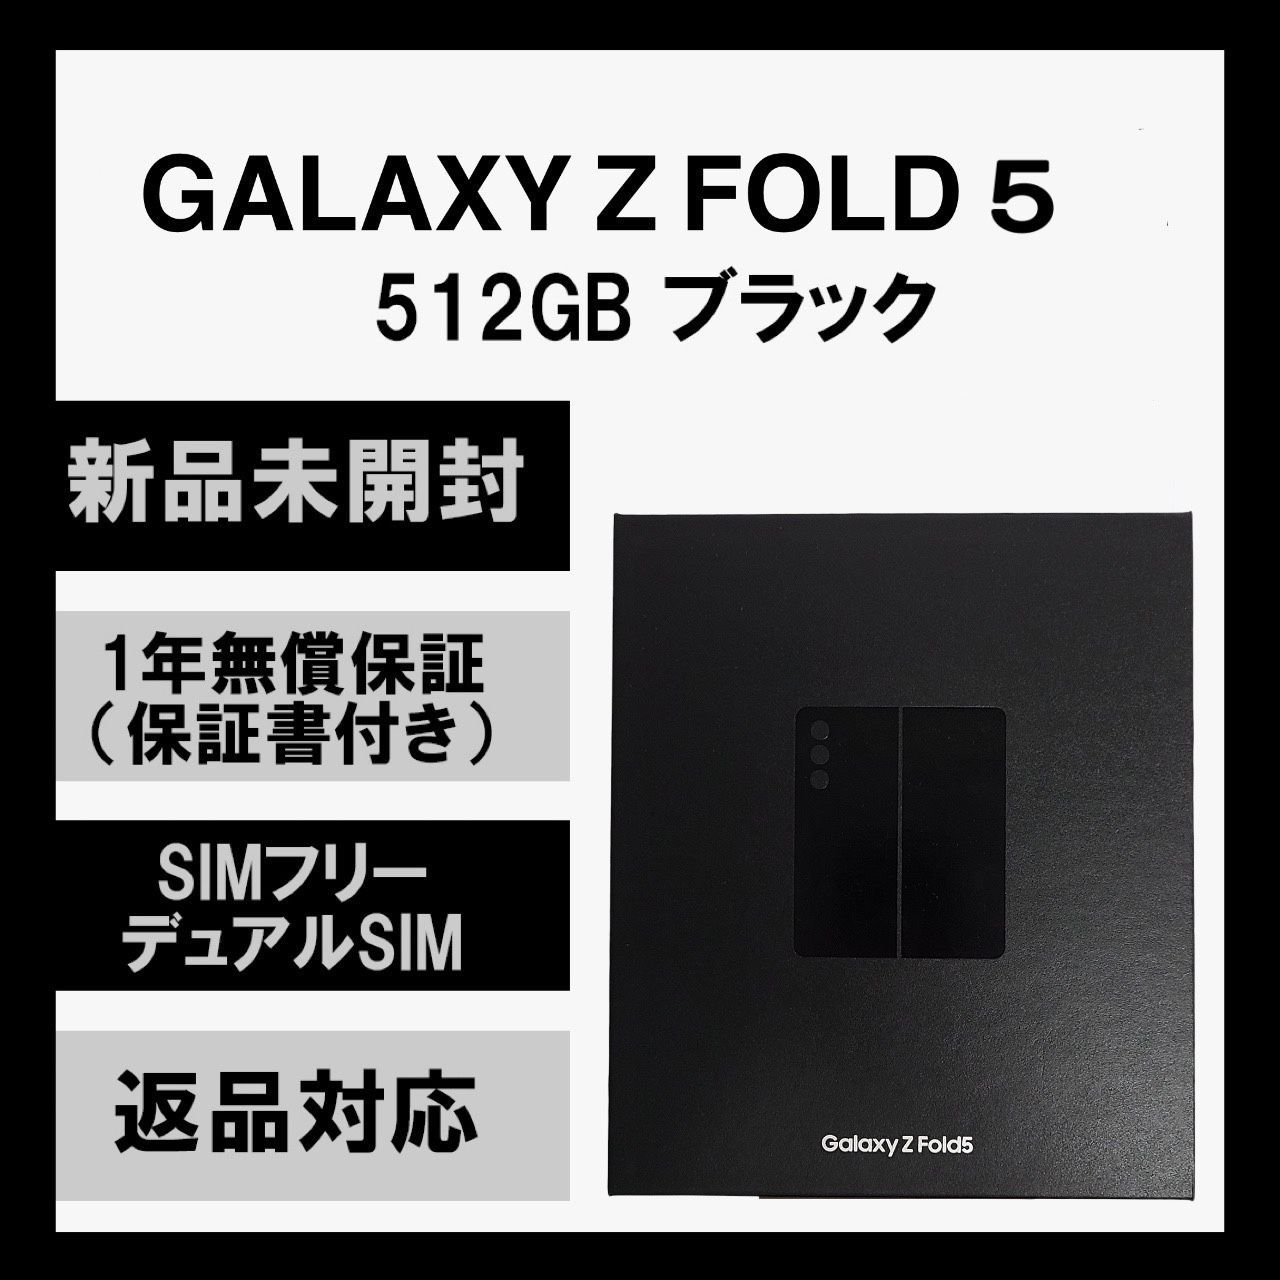 Galaxy Z Fold 5 5G ブラック 512GB SIMフリー - ソアルソ - メルカリ